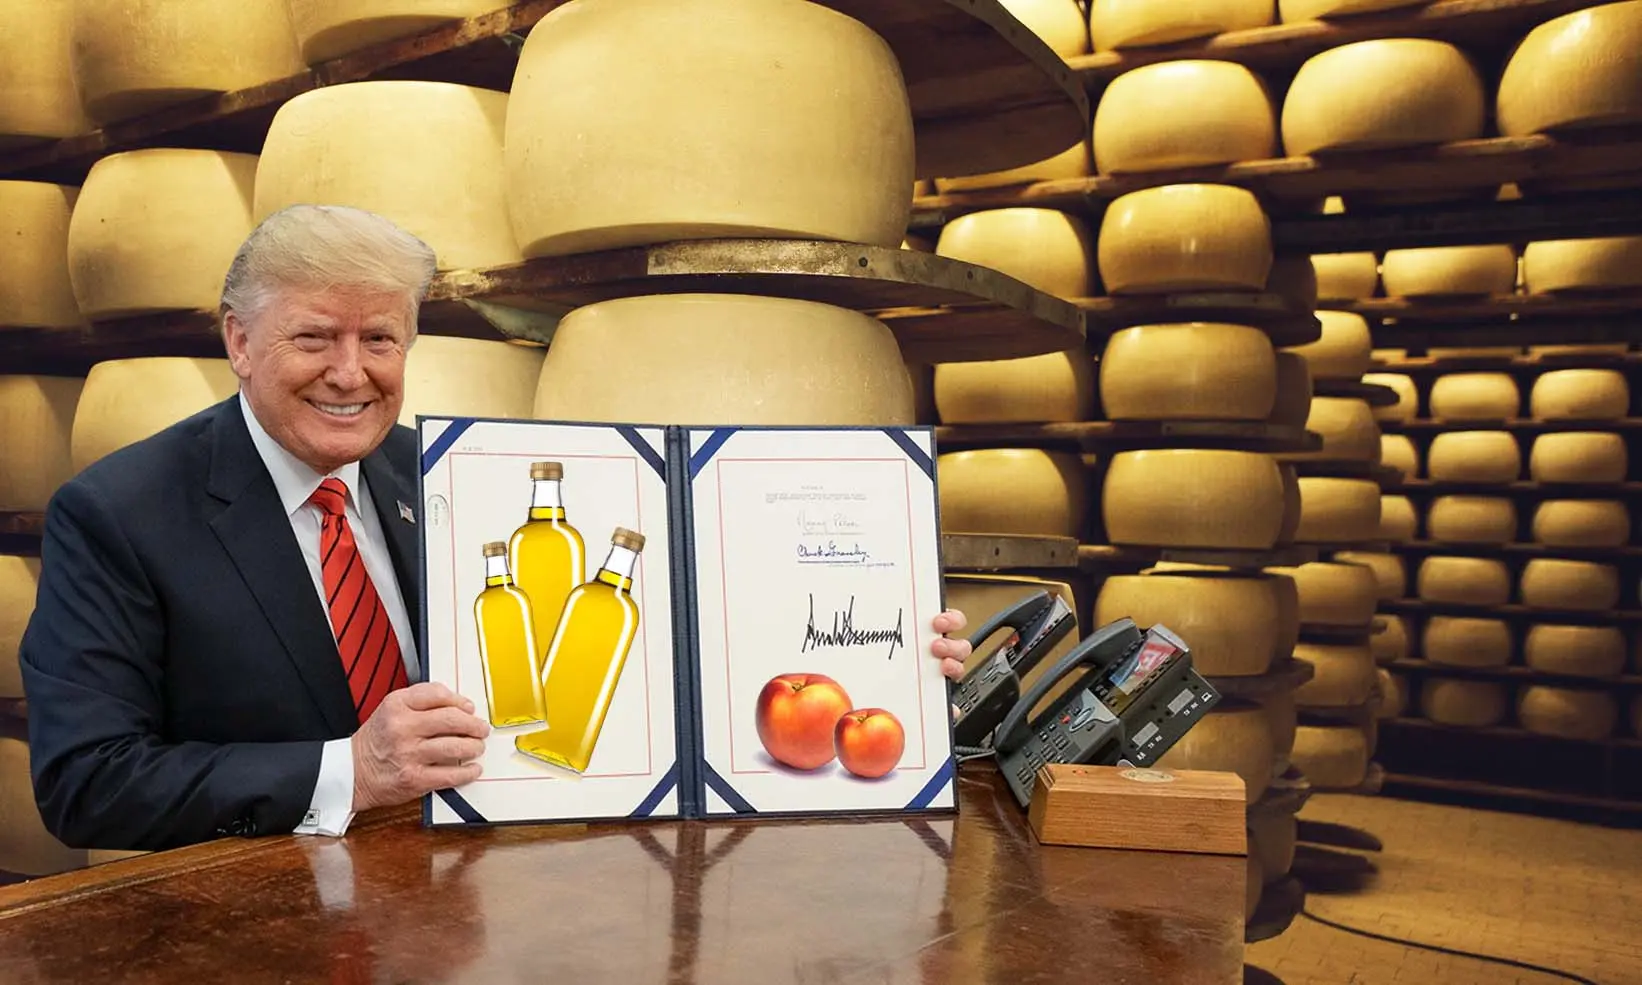 Parmesan, whisky, huile d’olive : voici les produits menacés par les taxes de Donald Trump